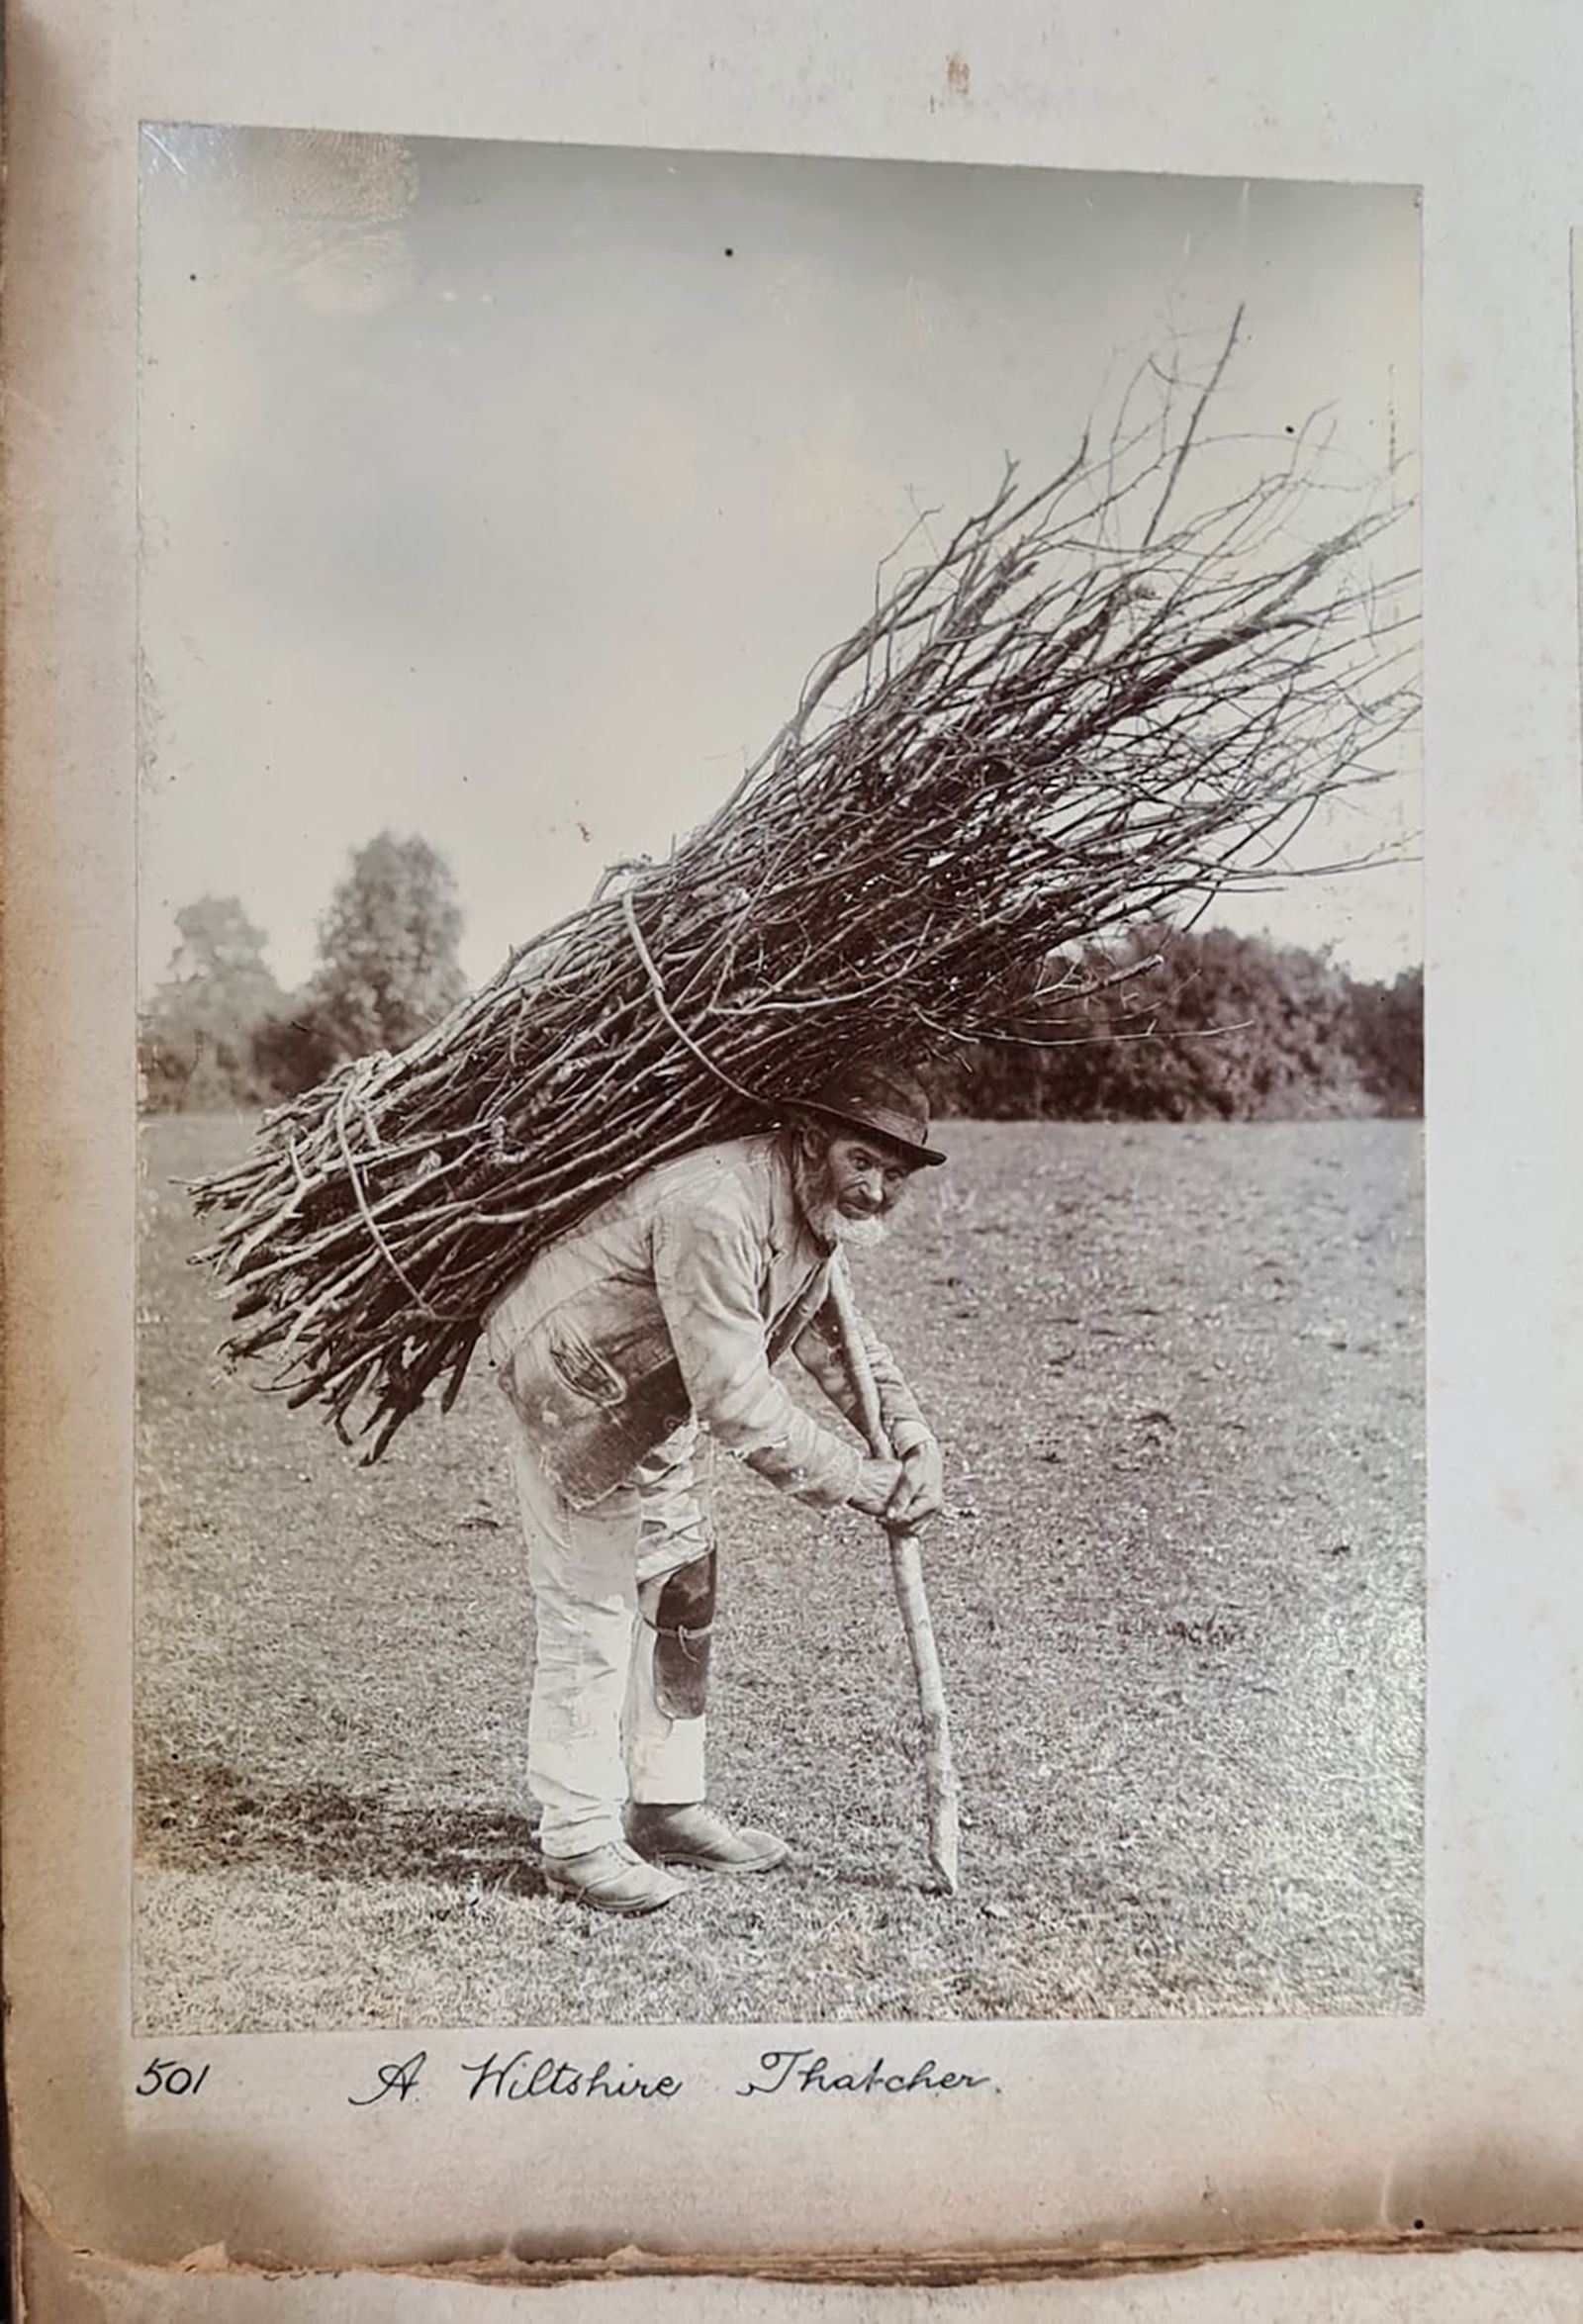 La fotografía original en blanco y negro del "Stick Man", ahora conocido como un pajarero de Wiltshire, fue redescubierta por un investigador de la Universidad del Oeste de Inglaterra. (Cortesía del Museo de Wiltshire)